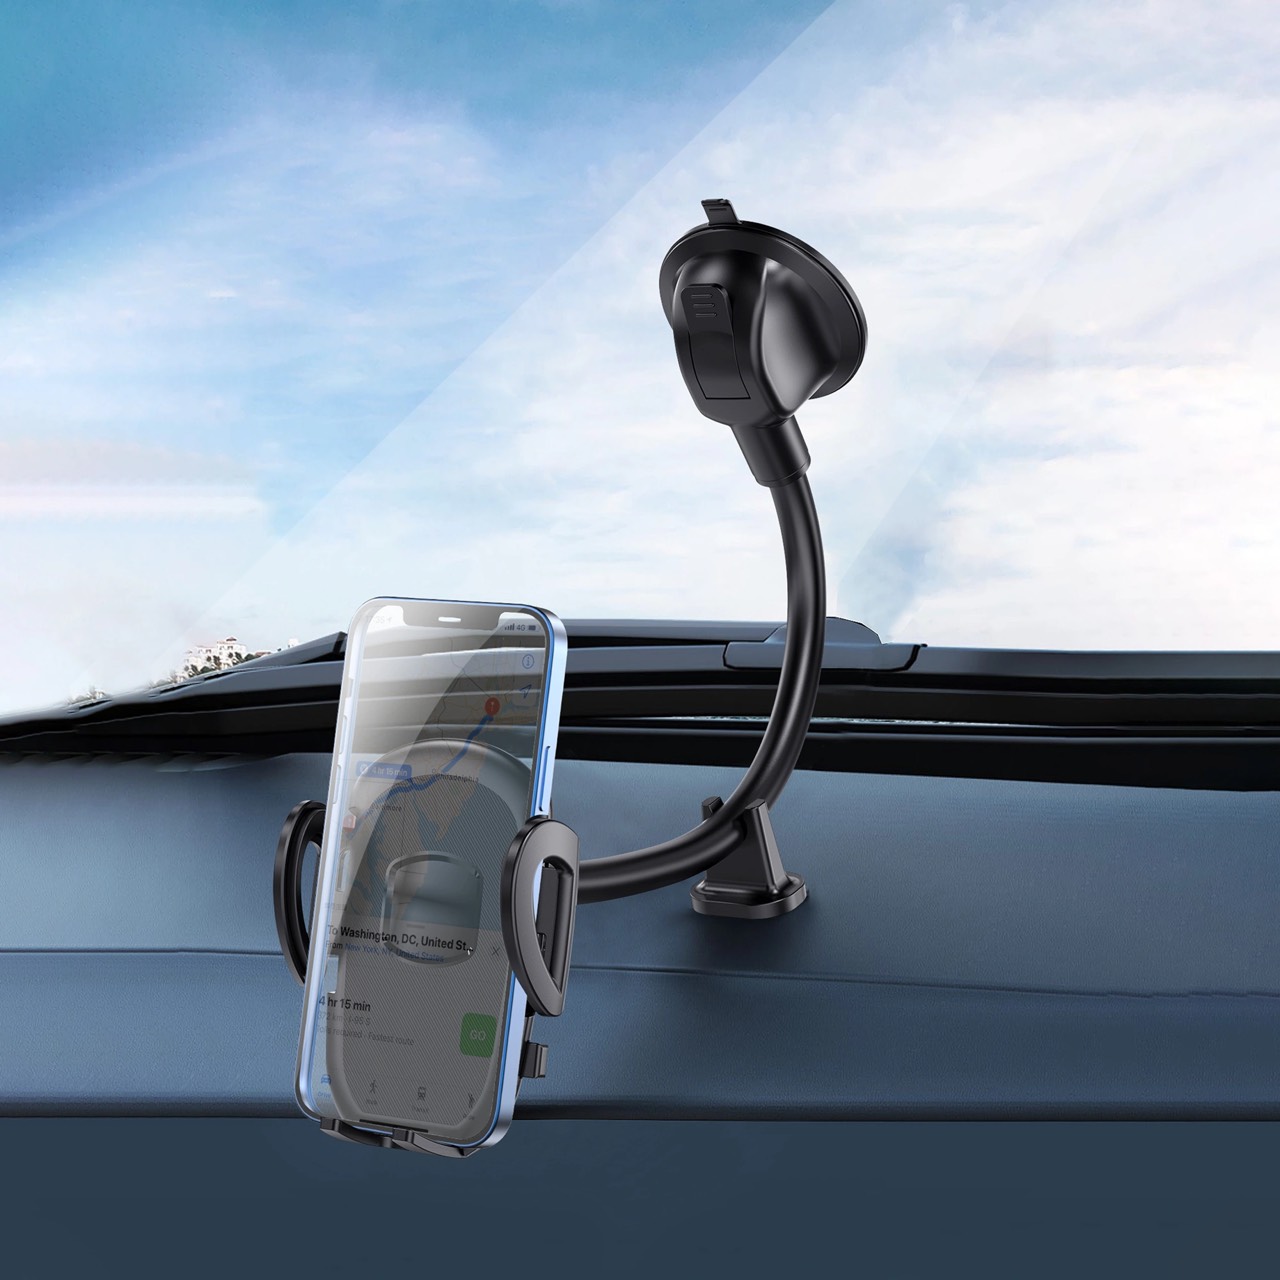 Giá đỡ Wiwu CH016 Car Mount dành cho điện thoại trên ô tô hút mặt da, mặt kính, mặt nhựa chất liệu nào cũng hút được - Hàng chính hãng